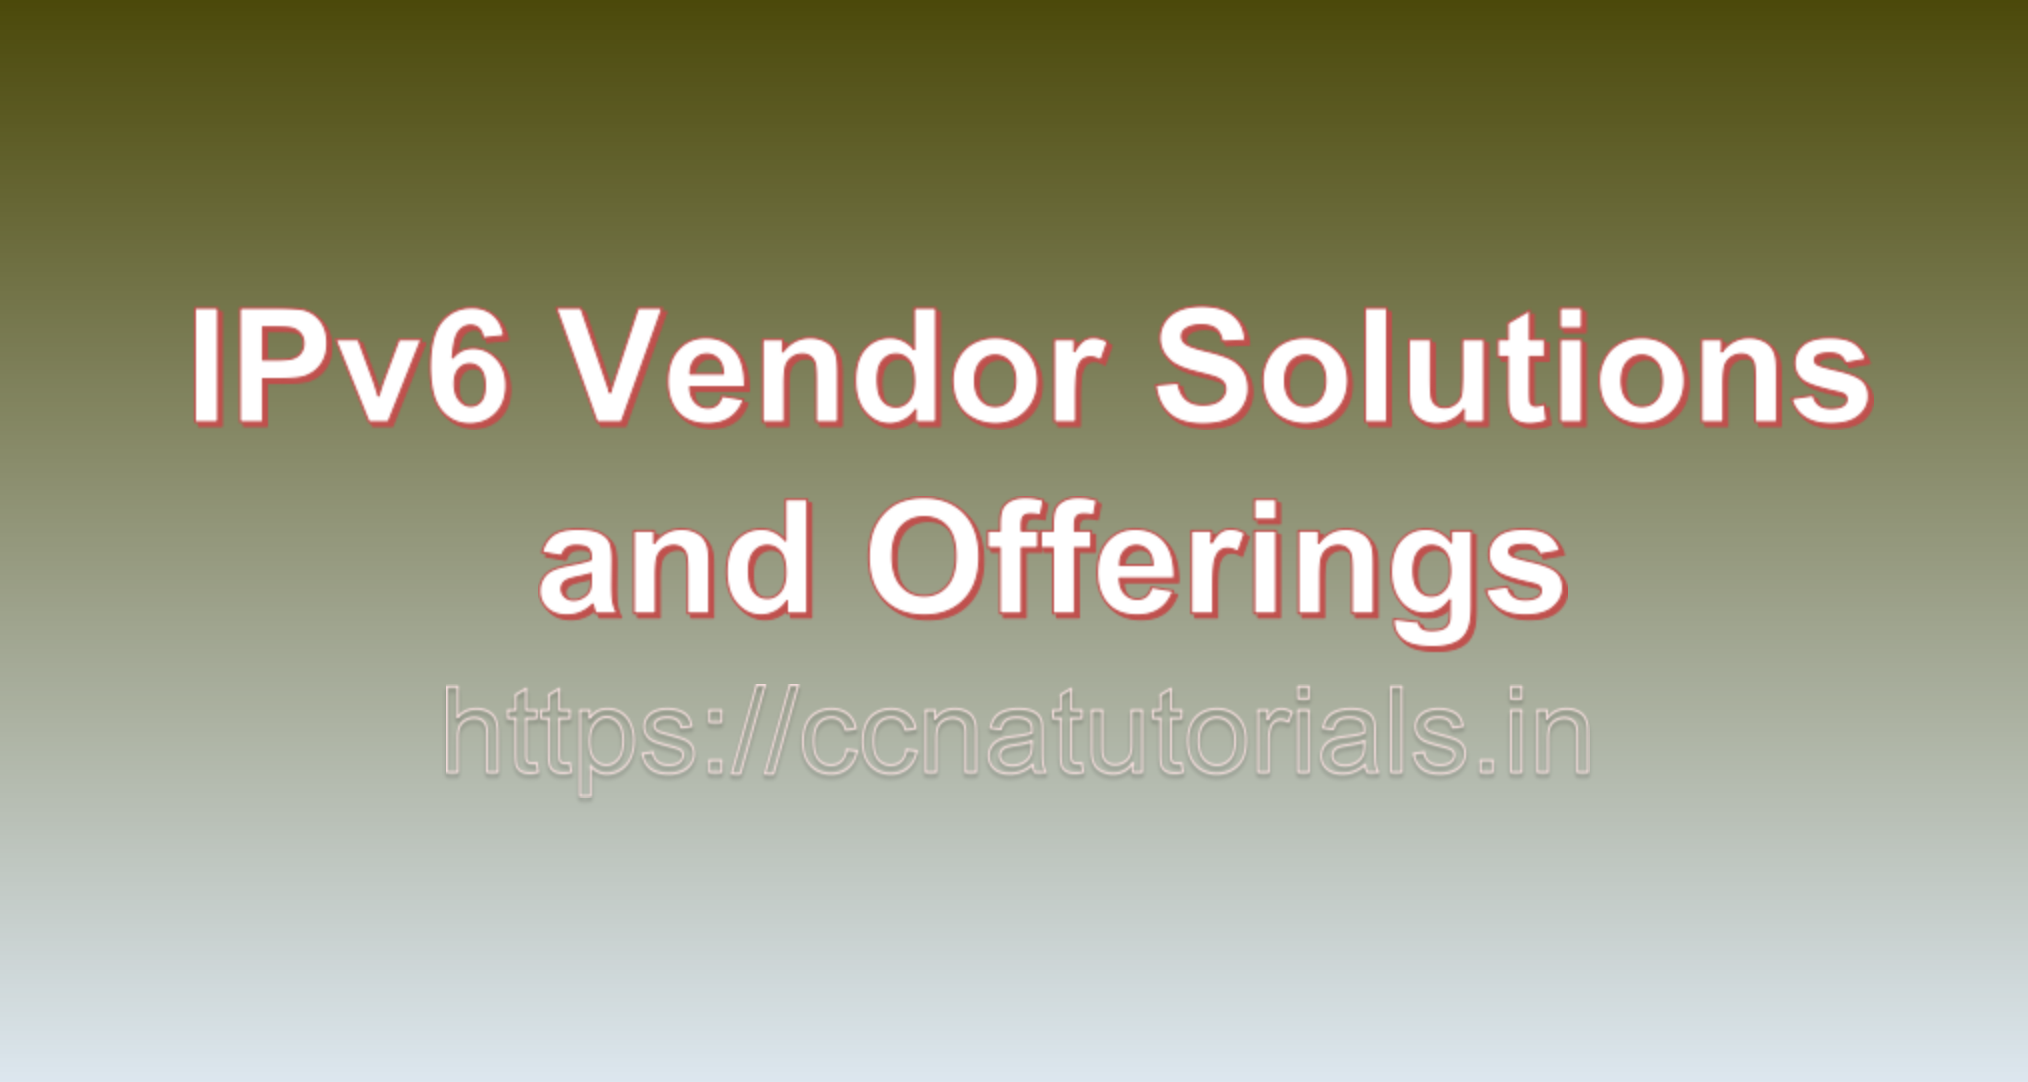 IPv6 Vendor Solutions and Offerings, ccna, ccna tutorials